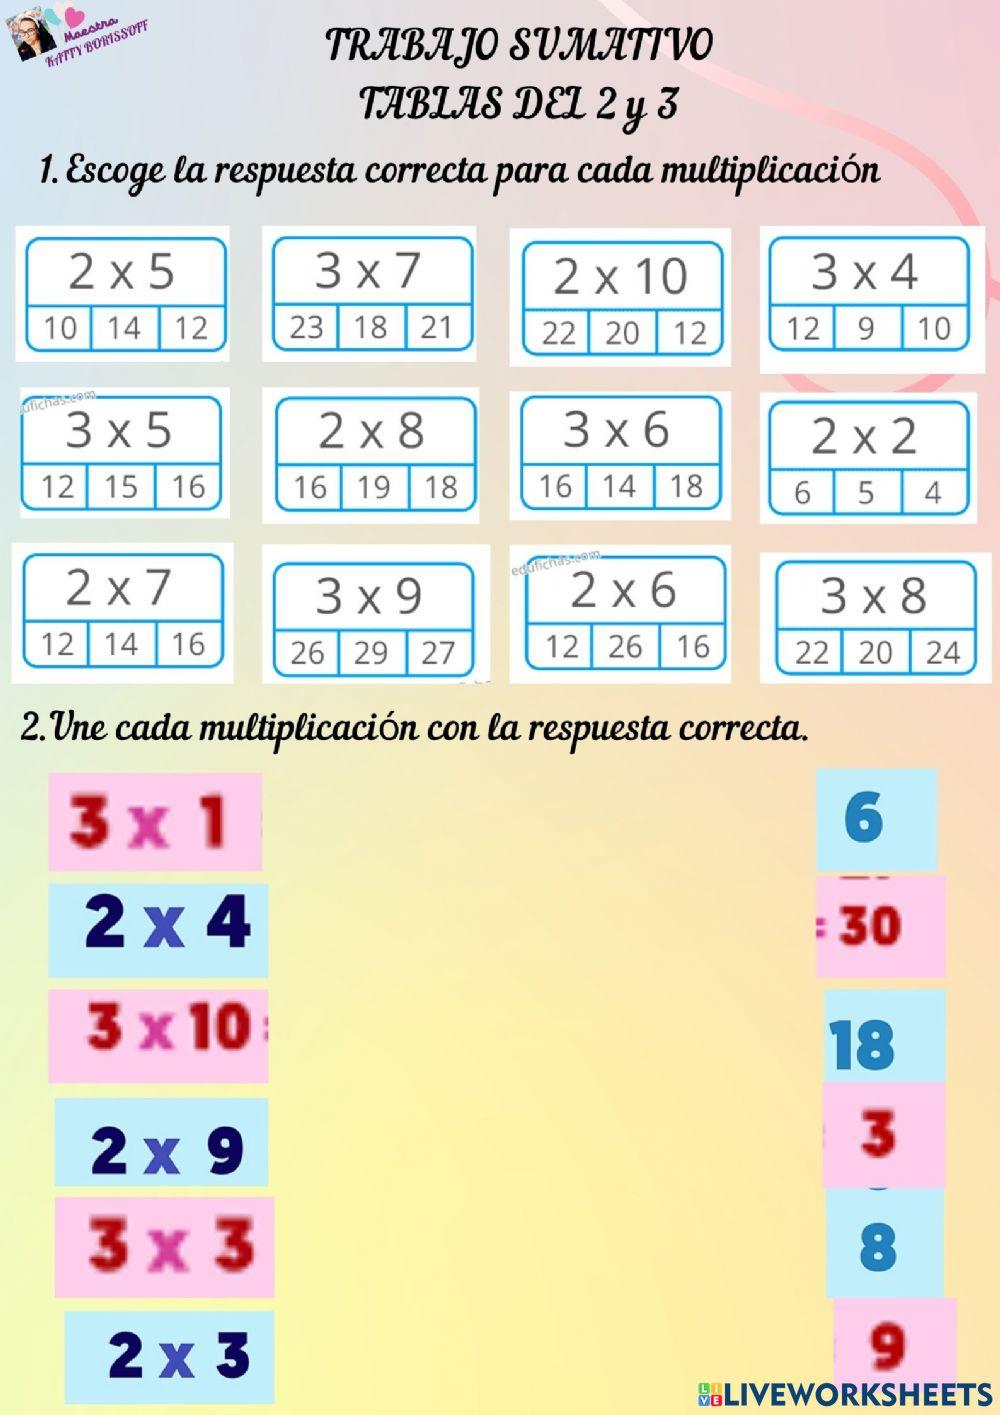 Tablas de Multiplicar del 2 y 3